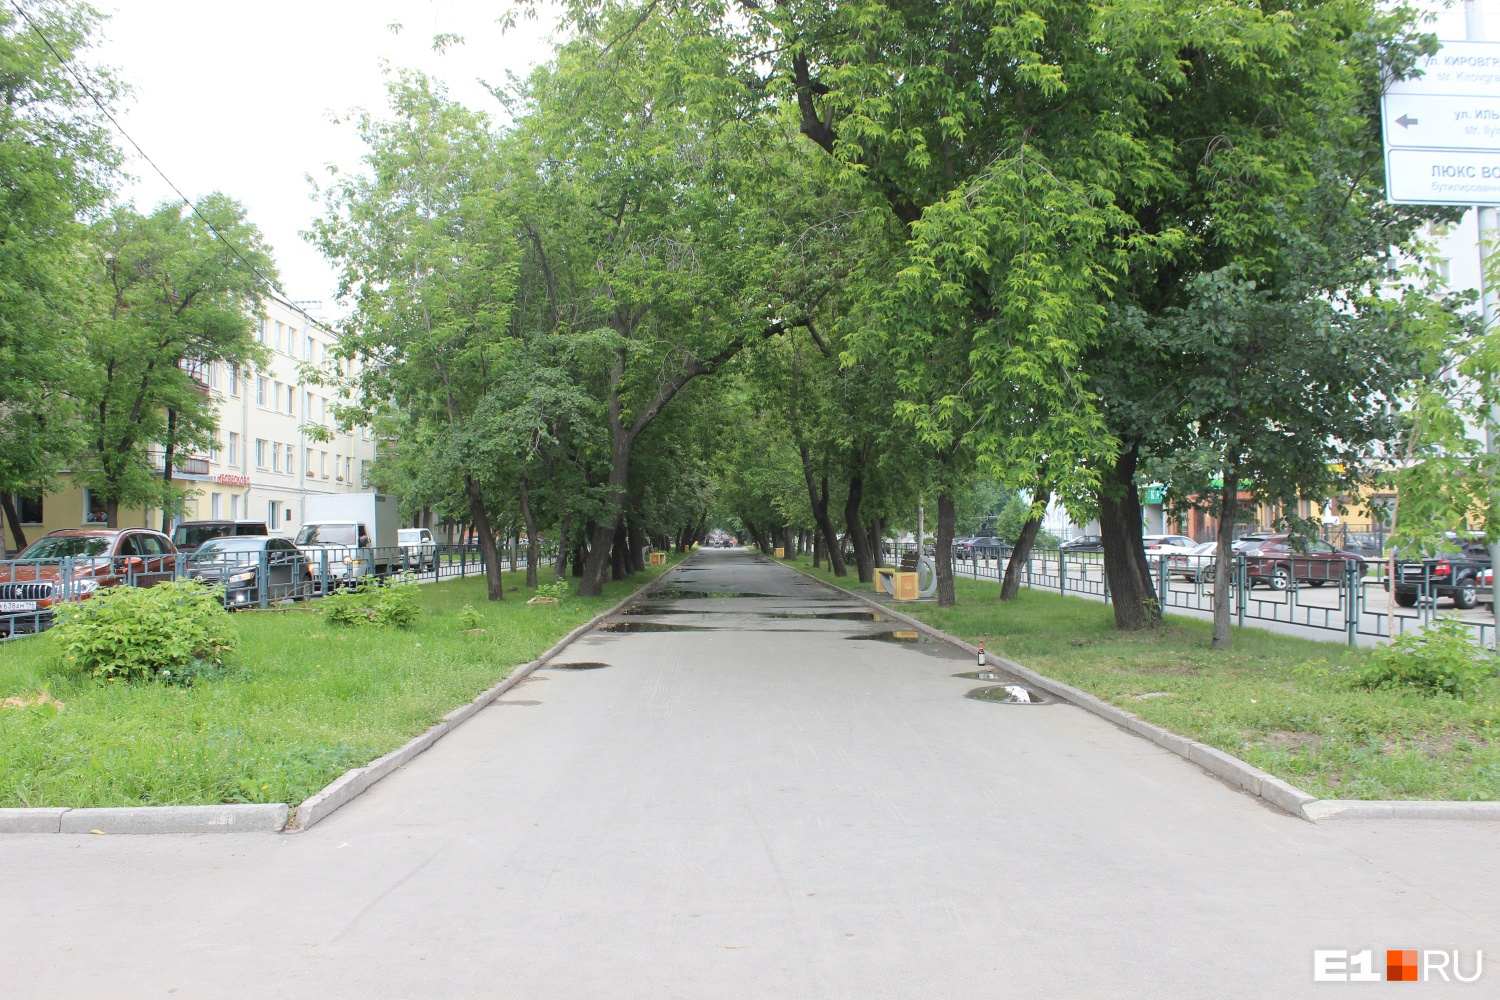 Аллея по улице Кировградской тянется до самого леса